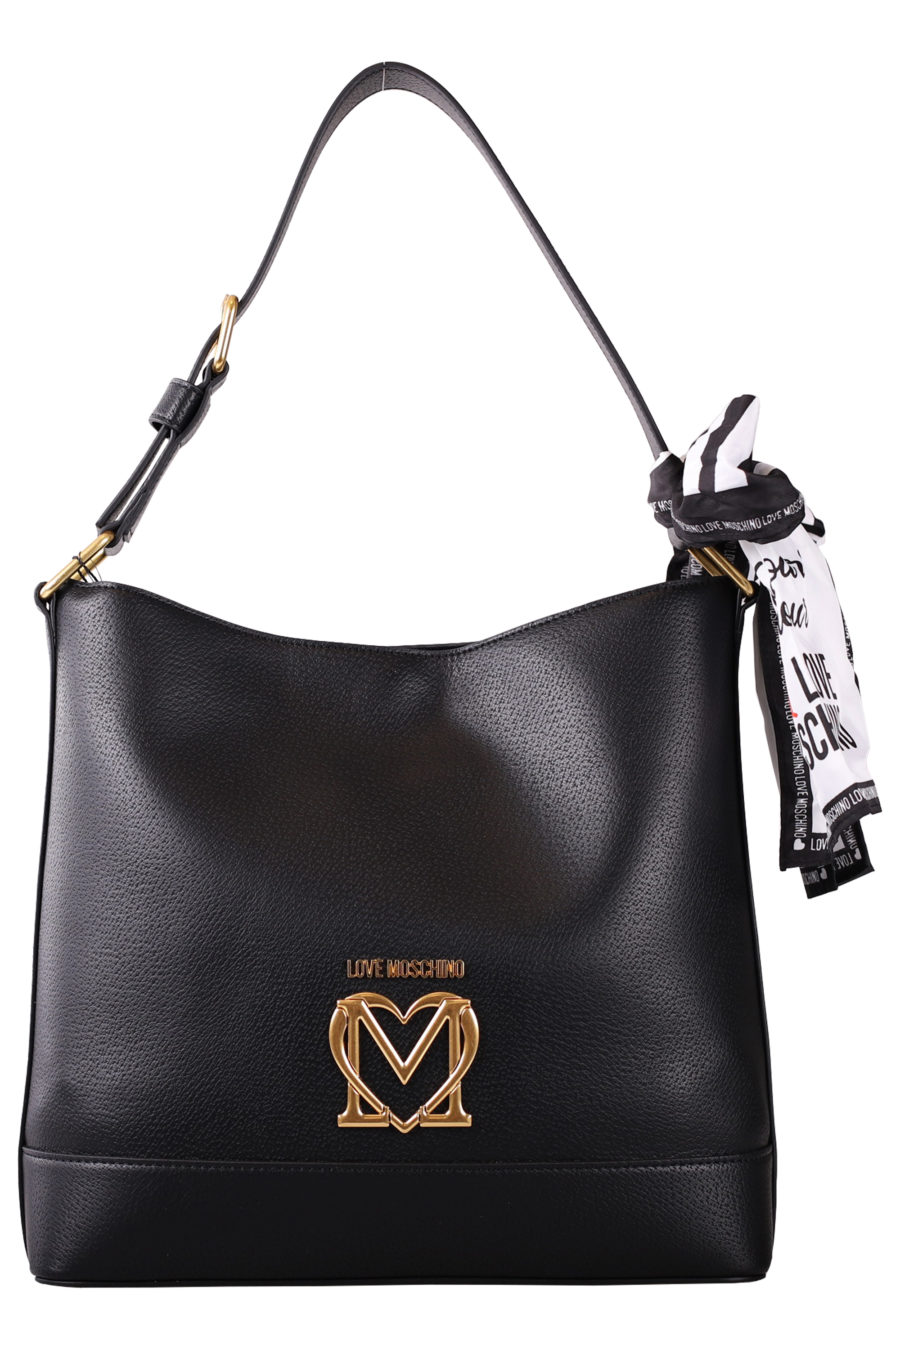 Black handbag with scarf - IMG 7058